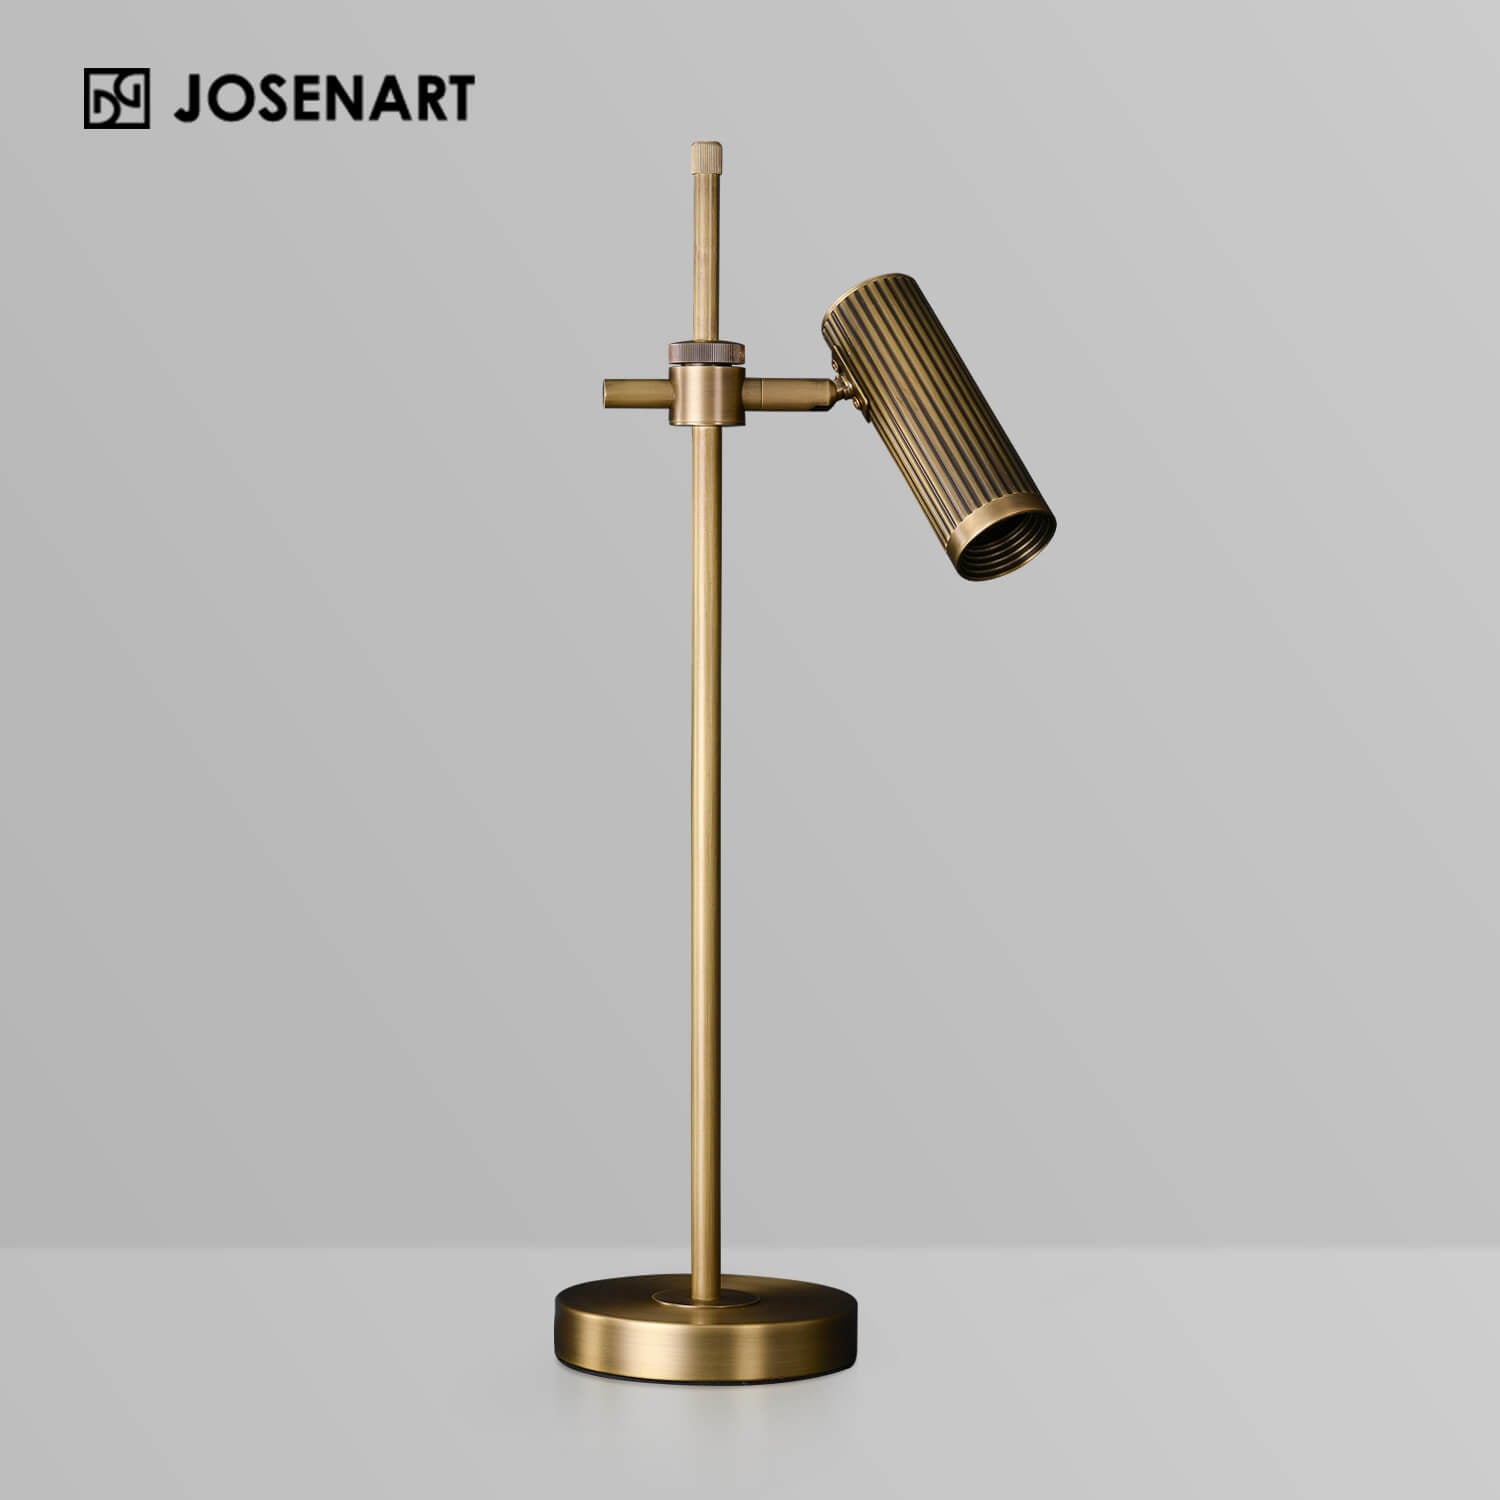 The Vintage Brass Adjustable Table Light JOSENART Josenart